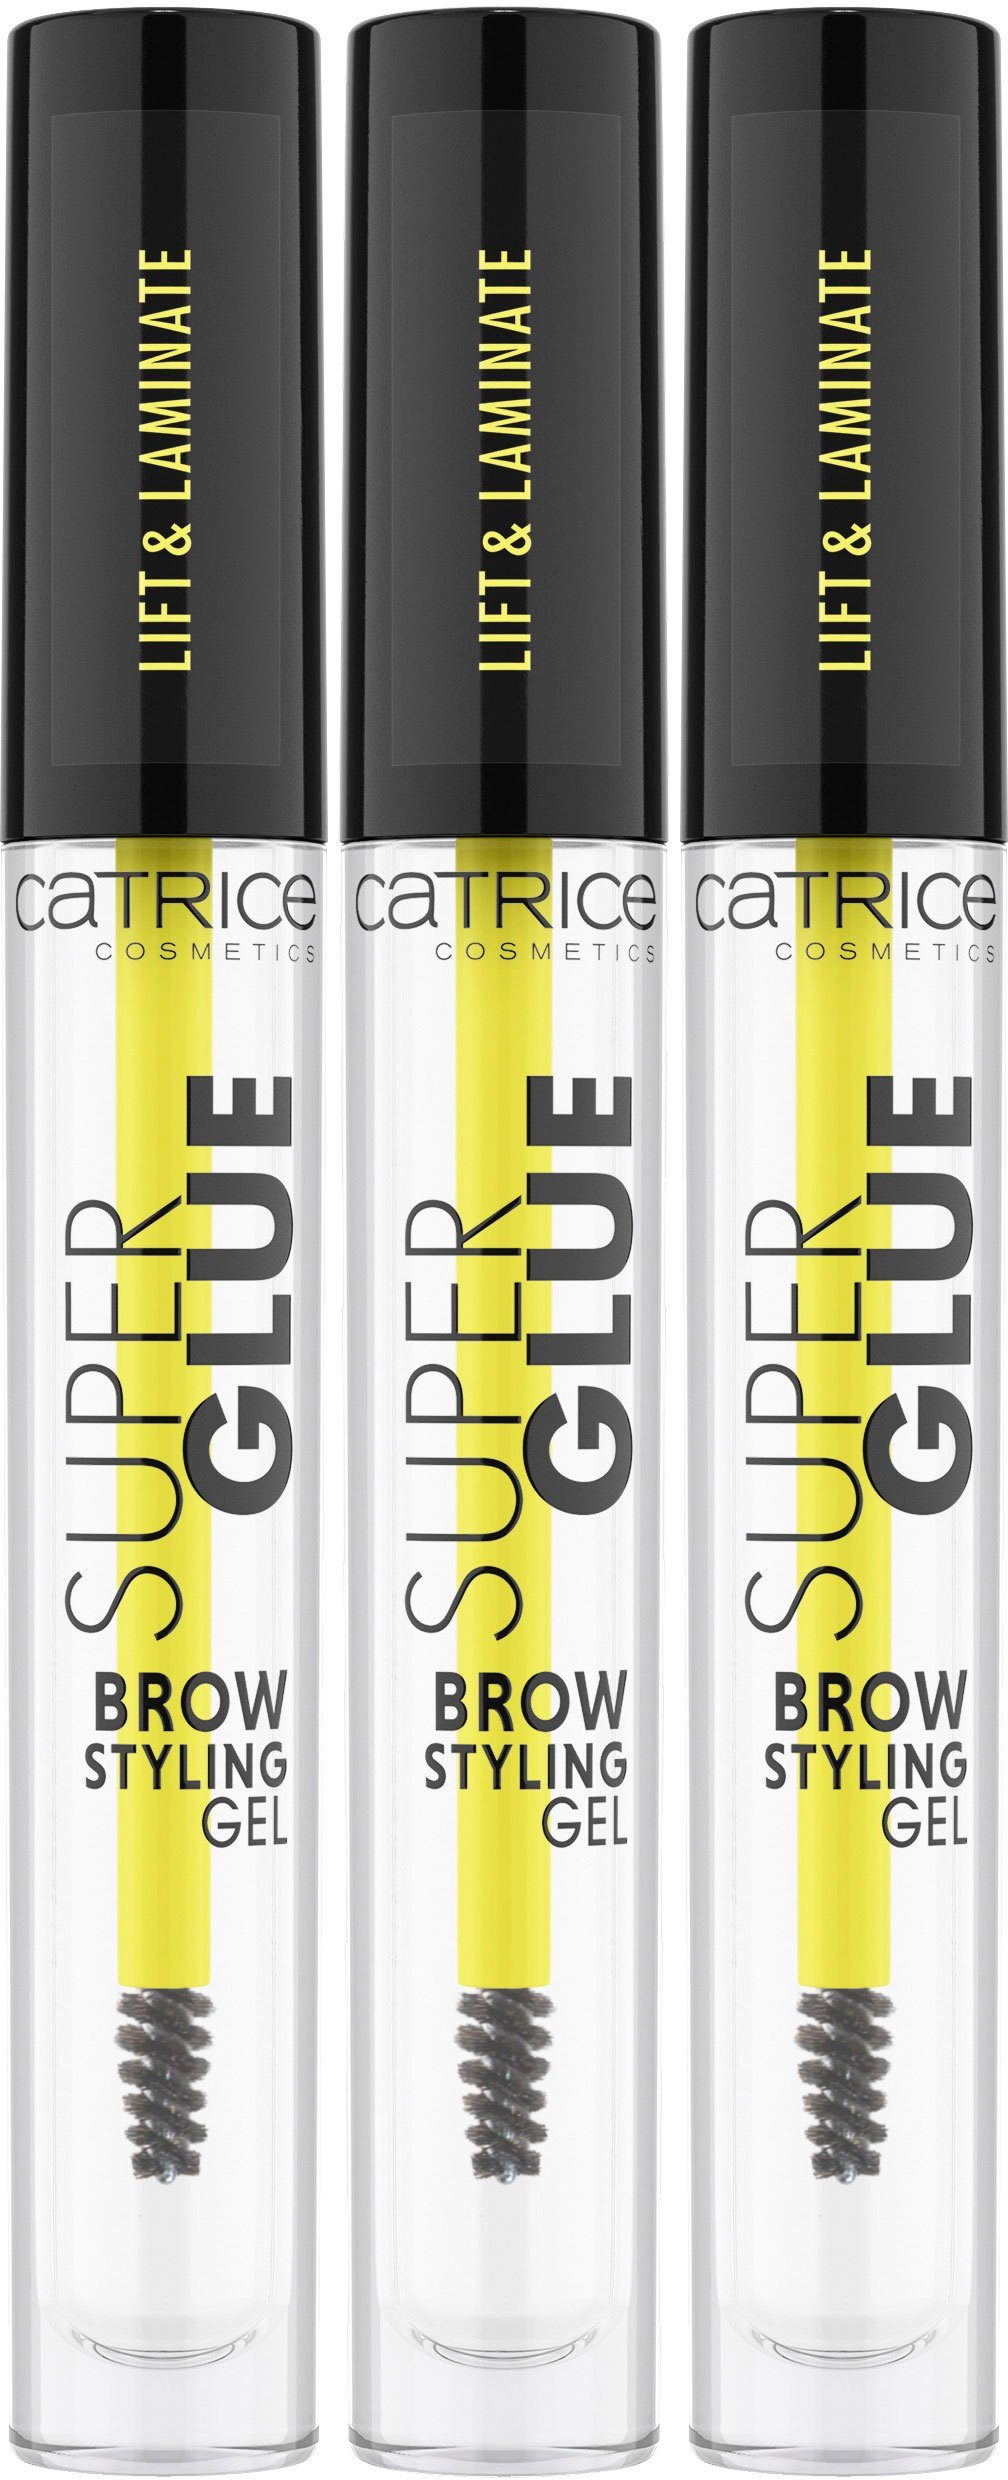 Catrice Augenbrauen-Gel Super Glue Brow Styling Gel, 3-tlg., Augen-Make-Up, Brow Gel für ultrastarken Halt | Augenbrauen-Make-Up